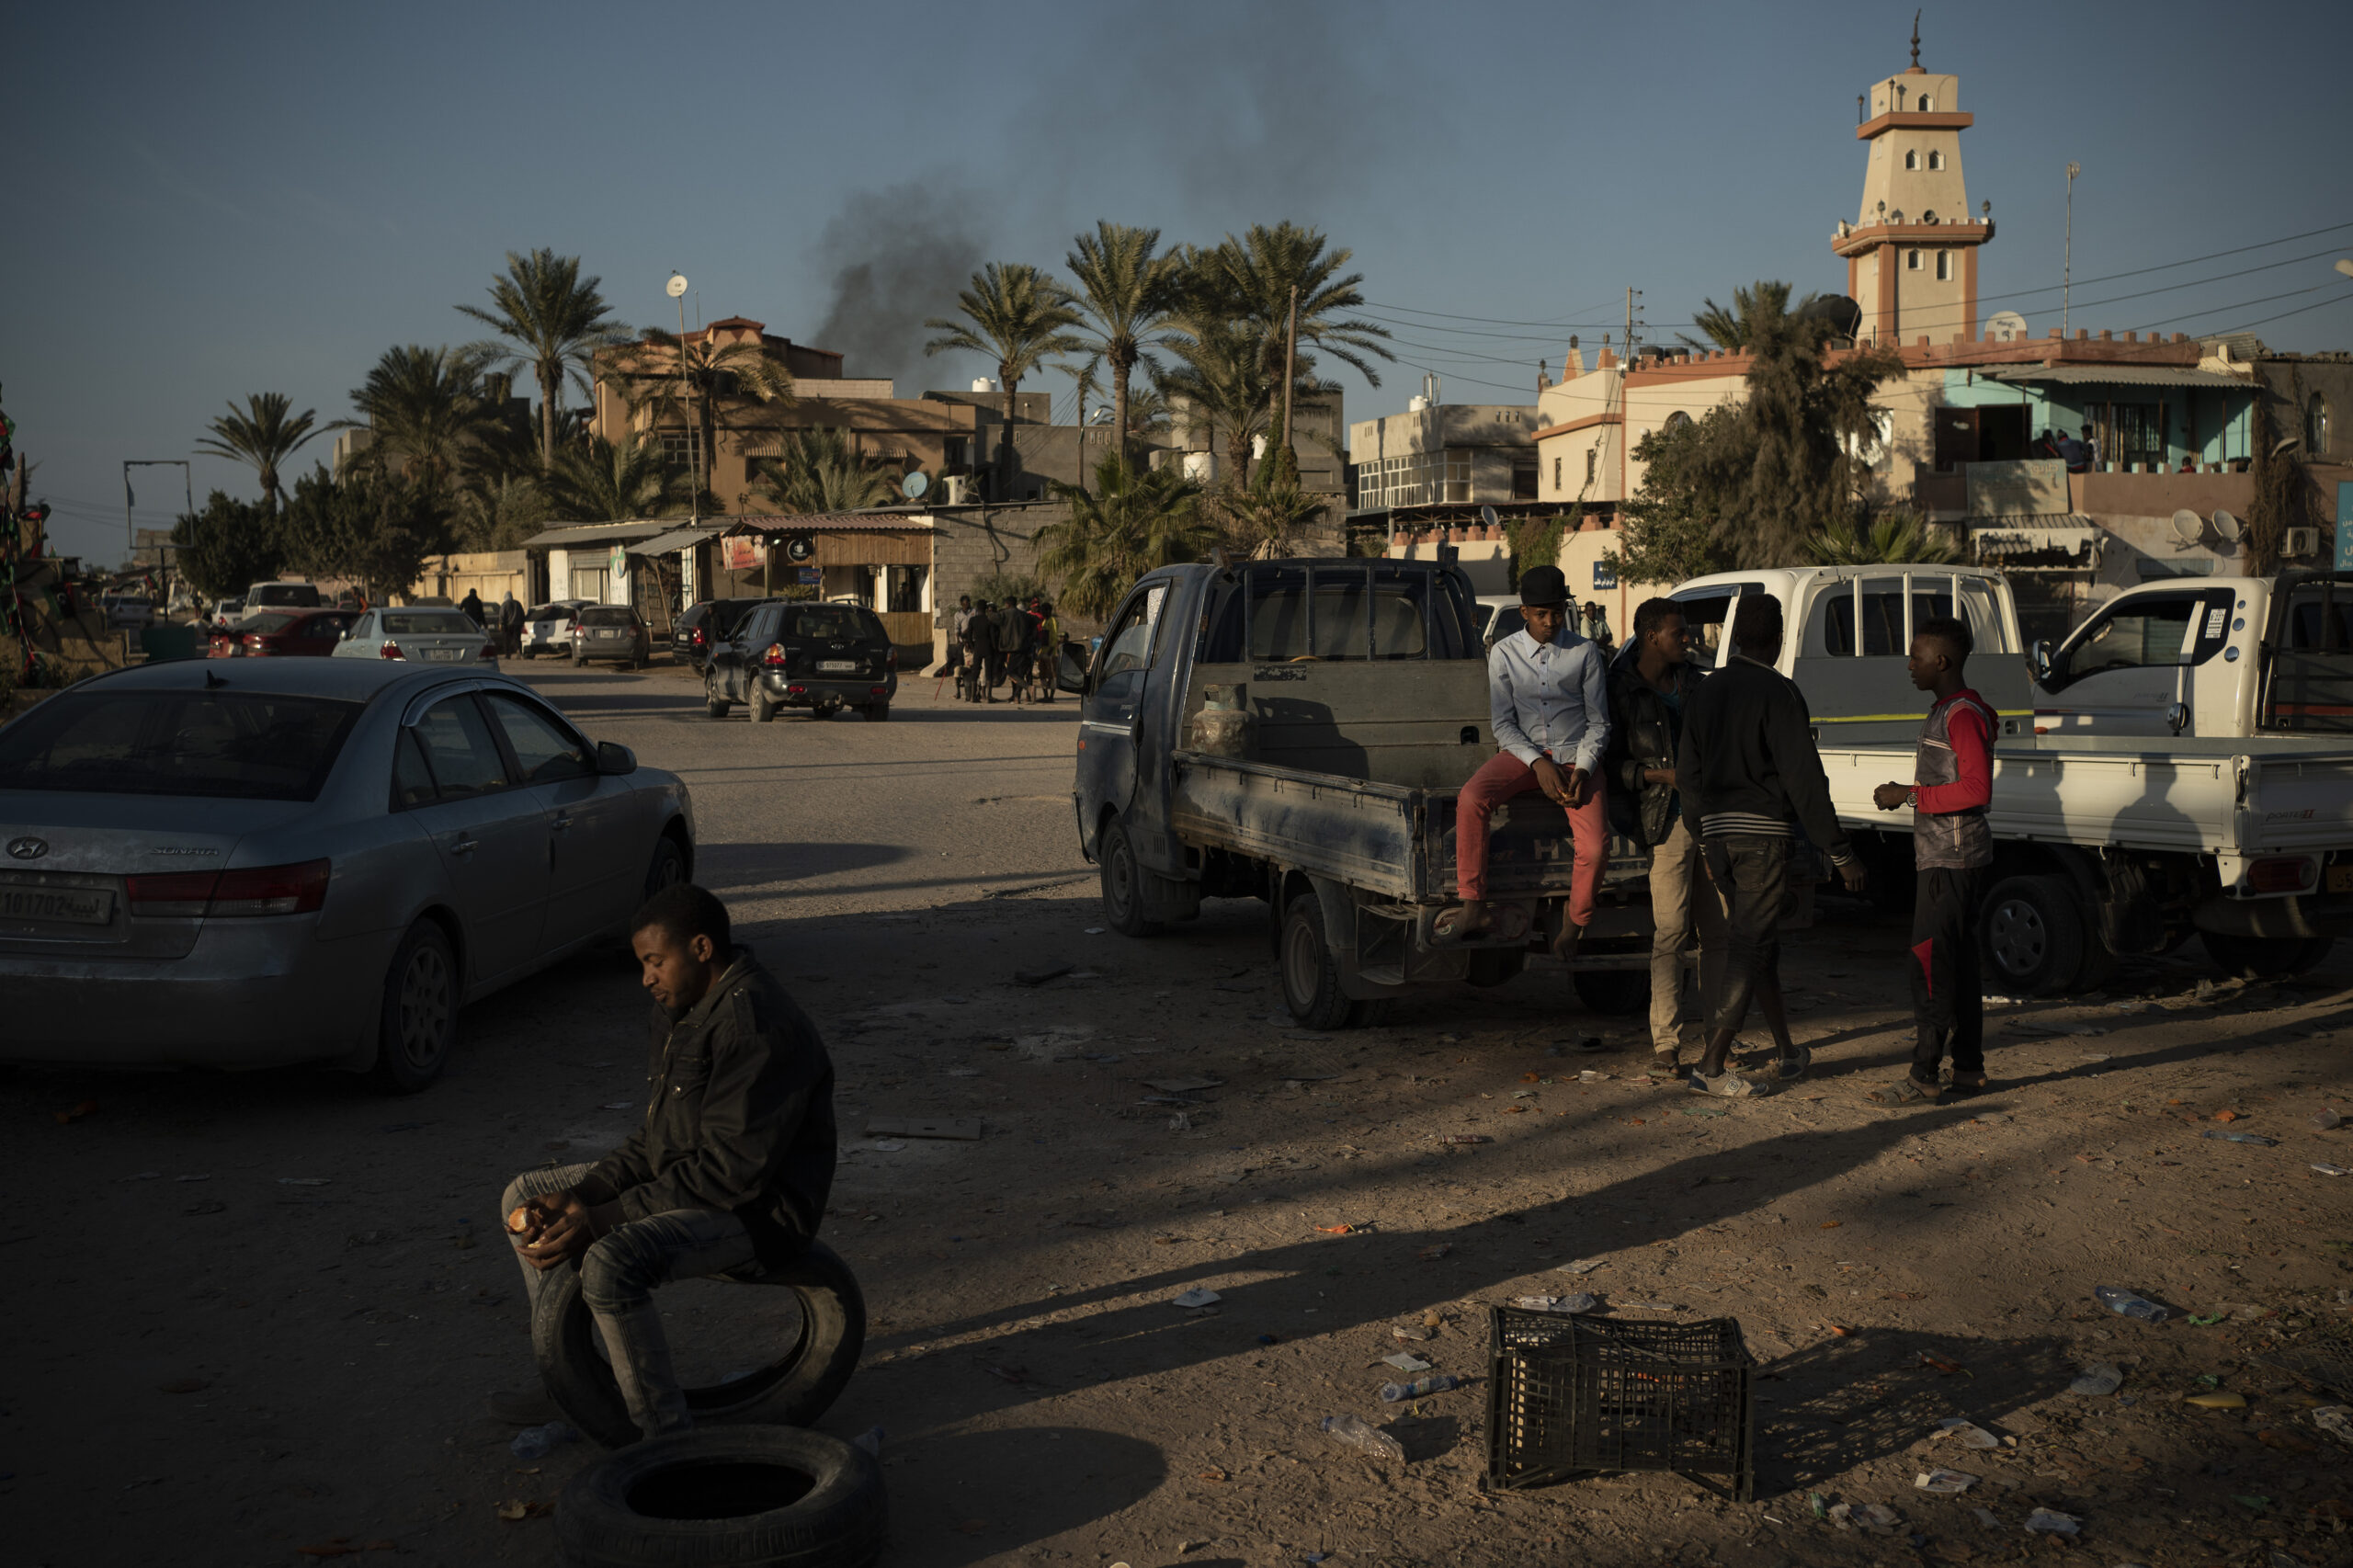 Λιβύη: Η ΕΕ ζητά άμεση κατάπαυση του πυρός και αποχώρηση των ξένων δυνάμεων